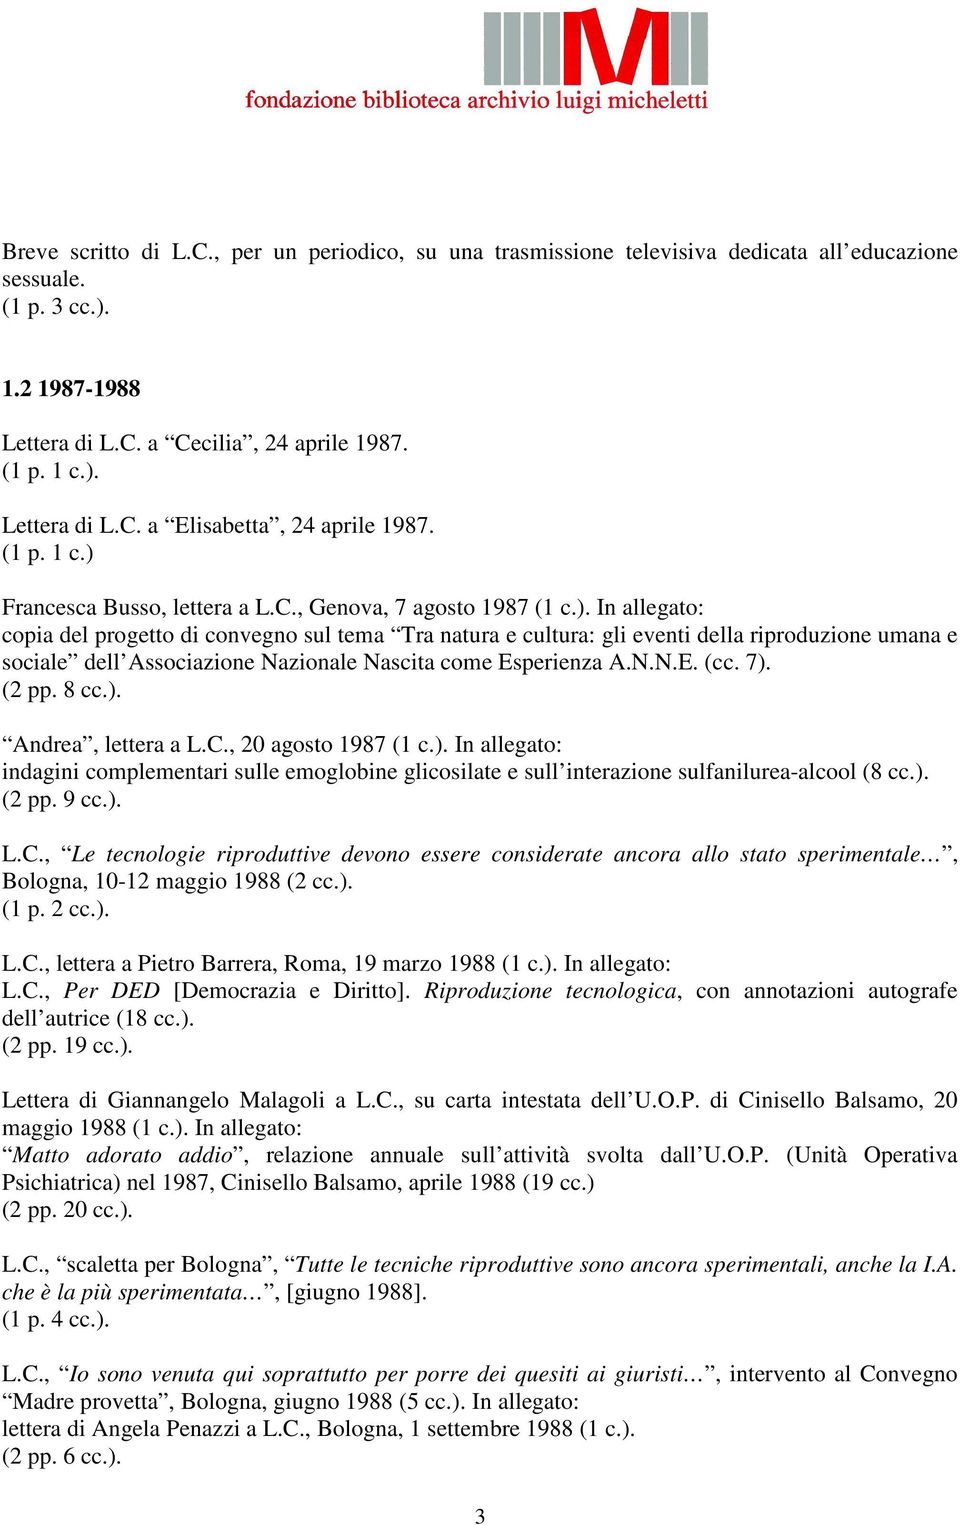 N.N.E. (cc. 7). (2 pp. 8 cc.). Andrea, lettera a L.C., 20 agosto 1987 (1 c.). In allegato: indagini complementari sulle emoglobine glicosilate e sull interazione sulfanilurea-alcool (8 cc.). (2 pp. 9 cc.